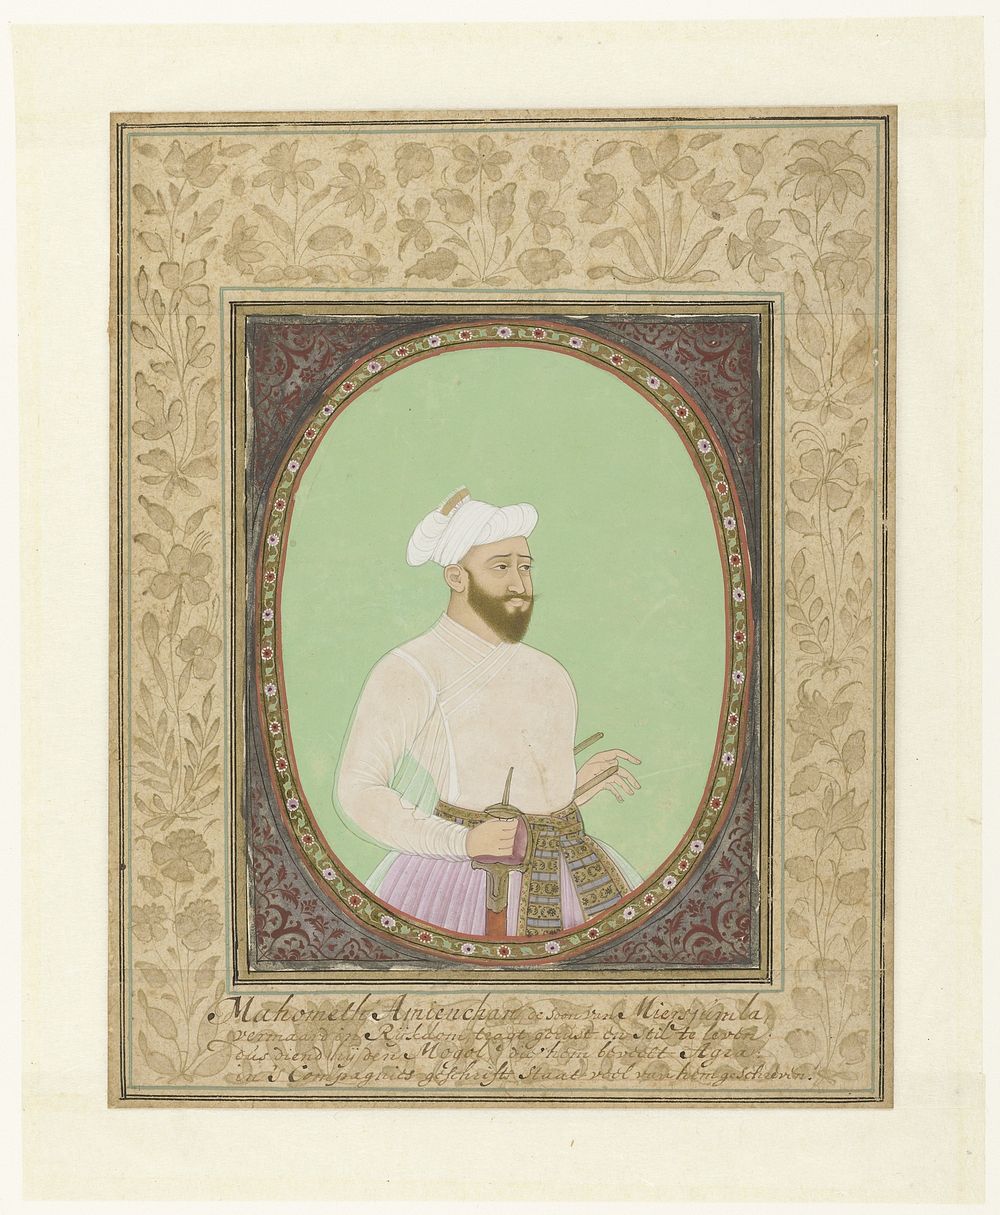 Portret van Muhammad Amin Khan met uitvoerig Hollands onderschrift op de versierde omlijsting (c. 1675 - c. 1685) by…